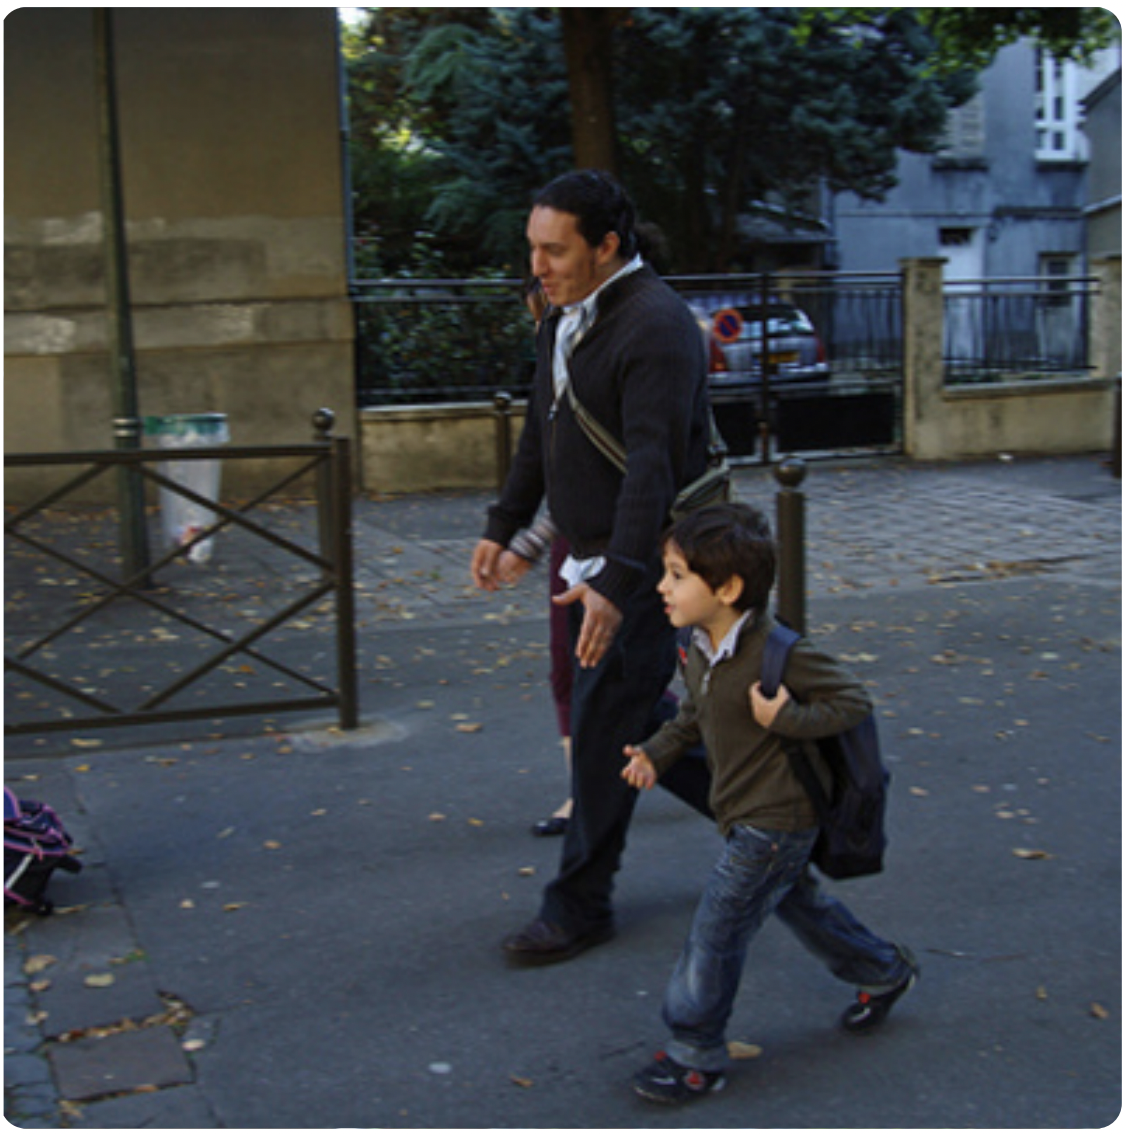 Es un hombre y un niño caminando por la acera. El hombre parece que va a trabajar y el niño va a la escuela.